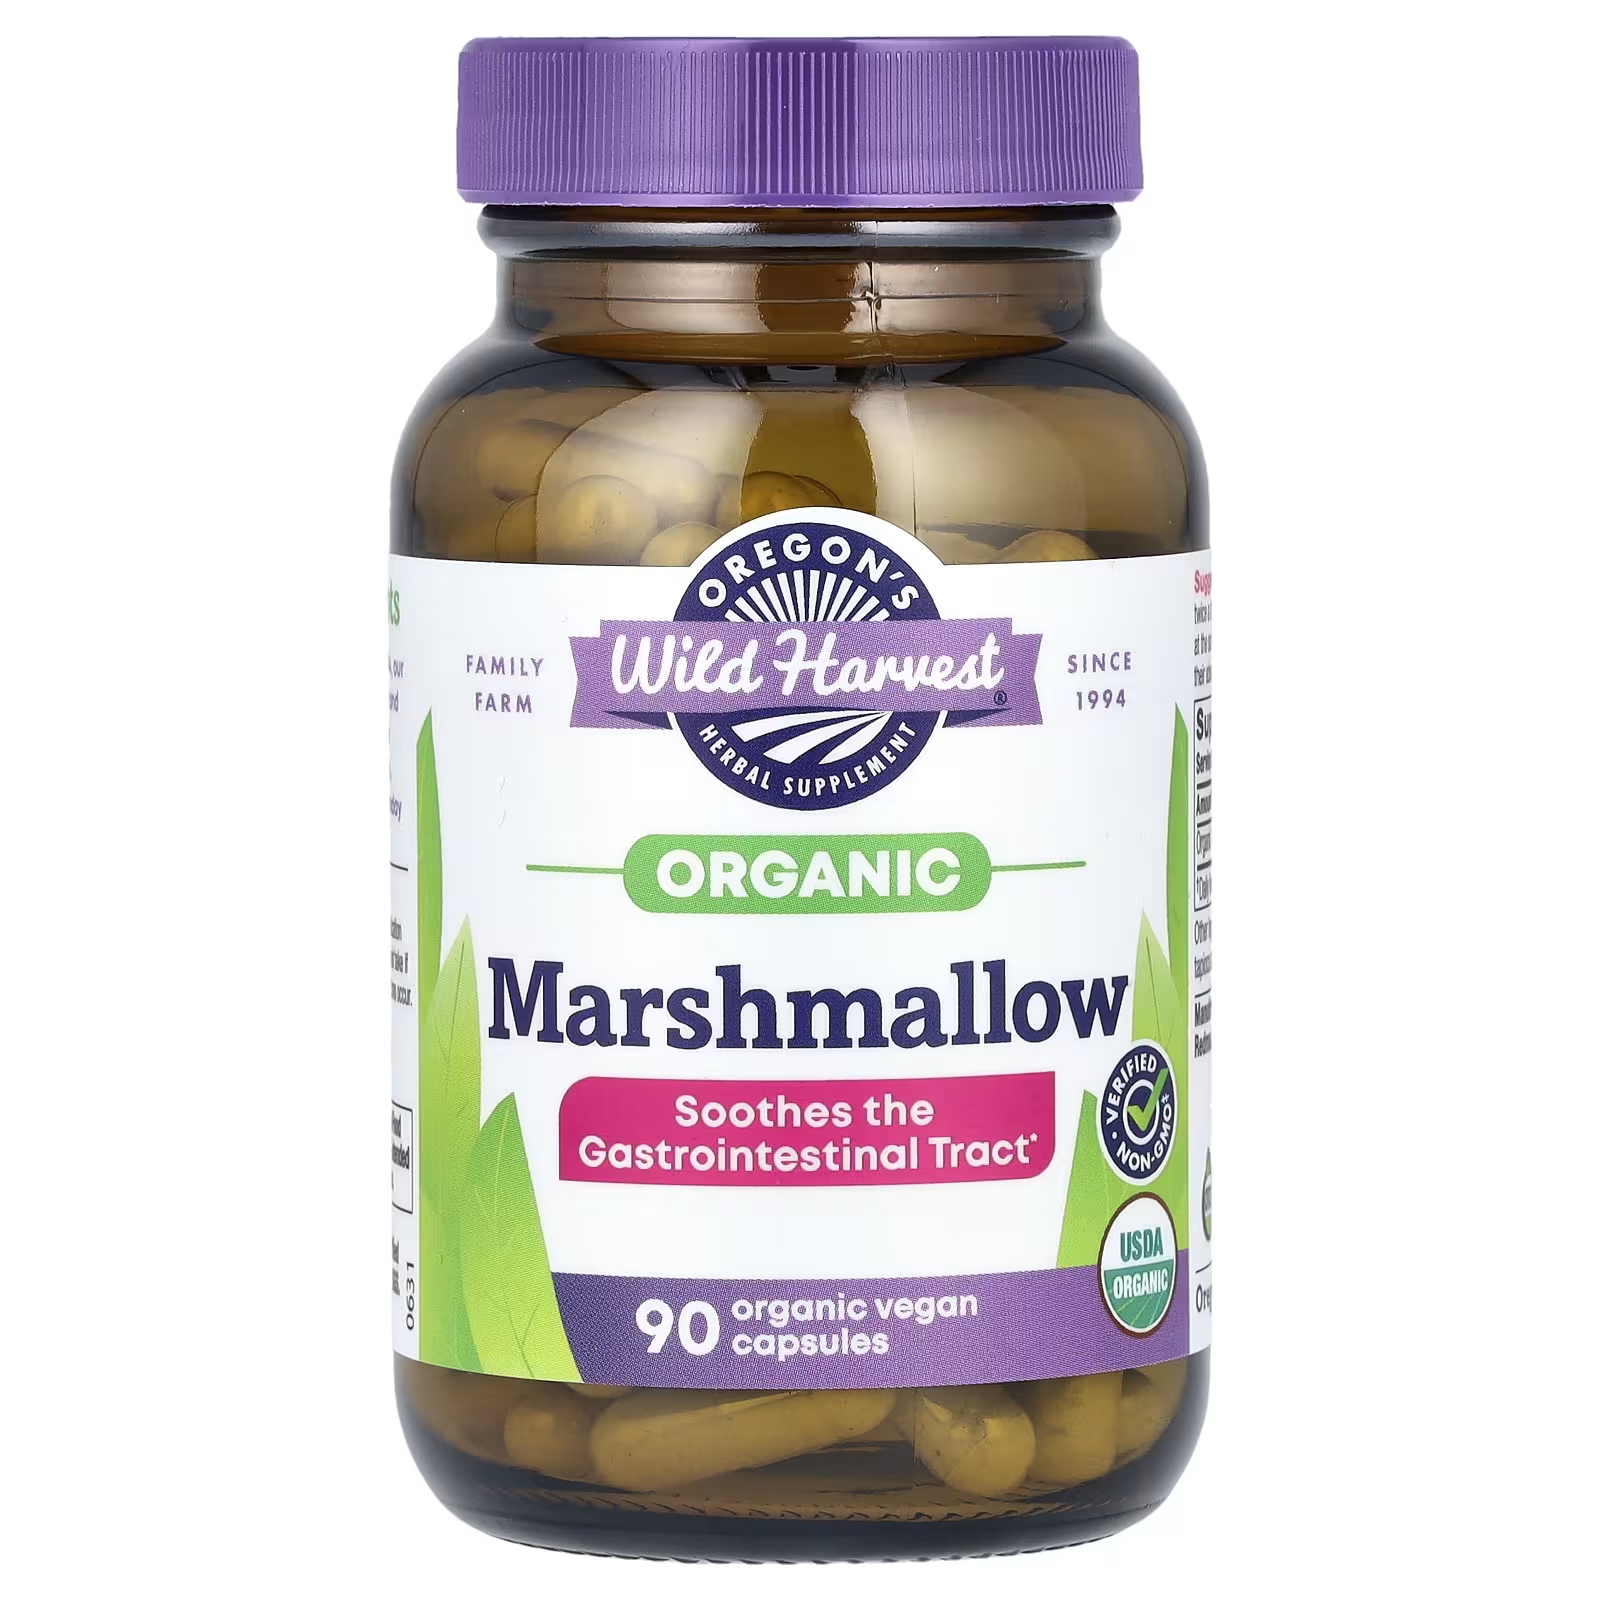 Травяная добавка Oregons Wild Harvest Organic Marshmallow, 90 органических веганских капсул сытин георгий николаевич мысли исцеляющие желудочно кишечный тракт